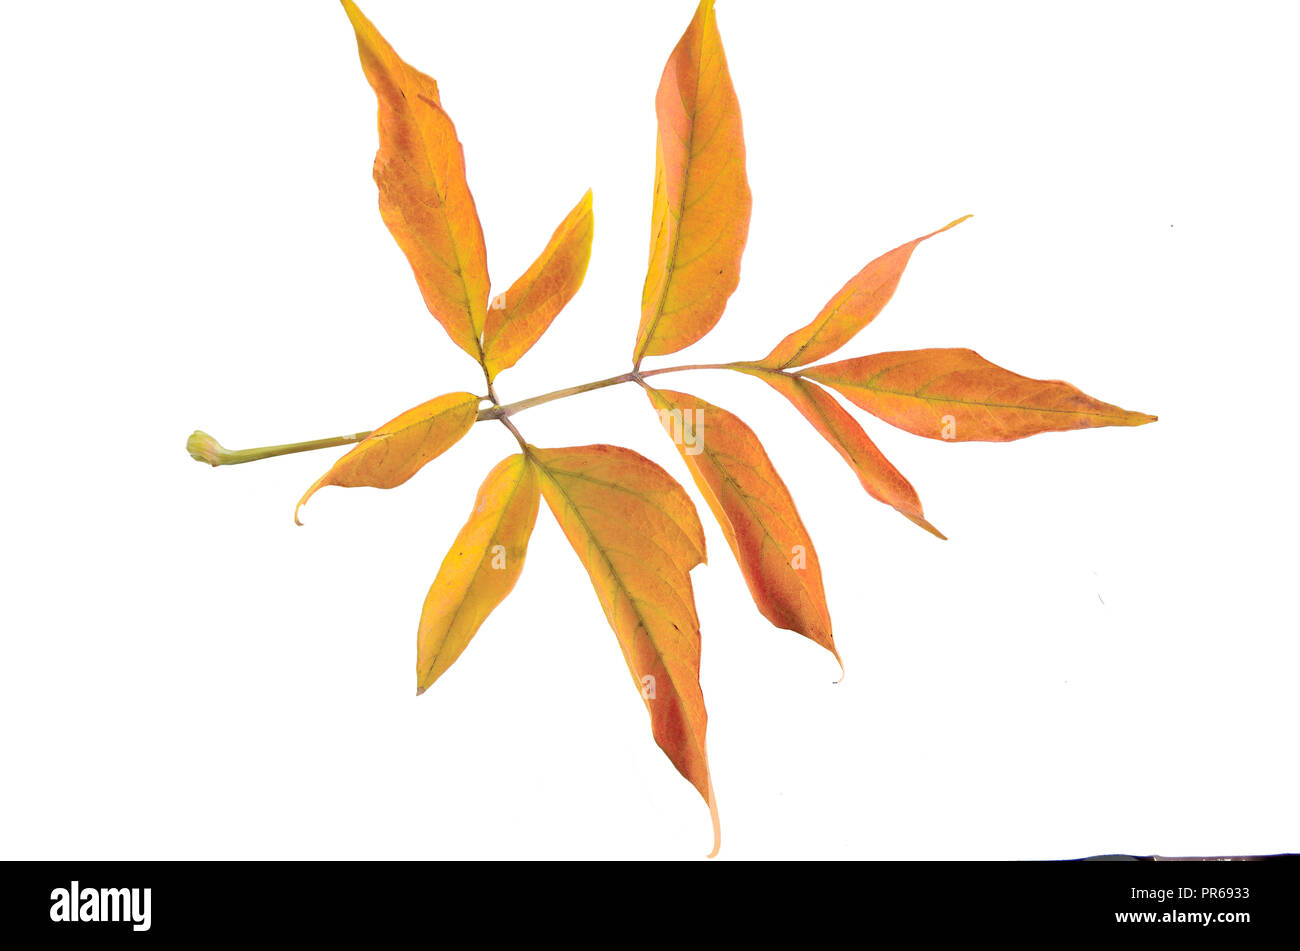 Herbst Zweig der ash-leaved Marple (Acer freemanii x) mit bunten Blättern, auf weißem Hintergrund. Holz Unkraut, bedroht die biologische div Stockfoto